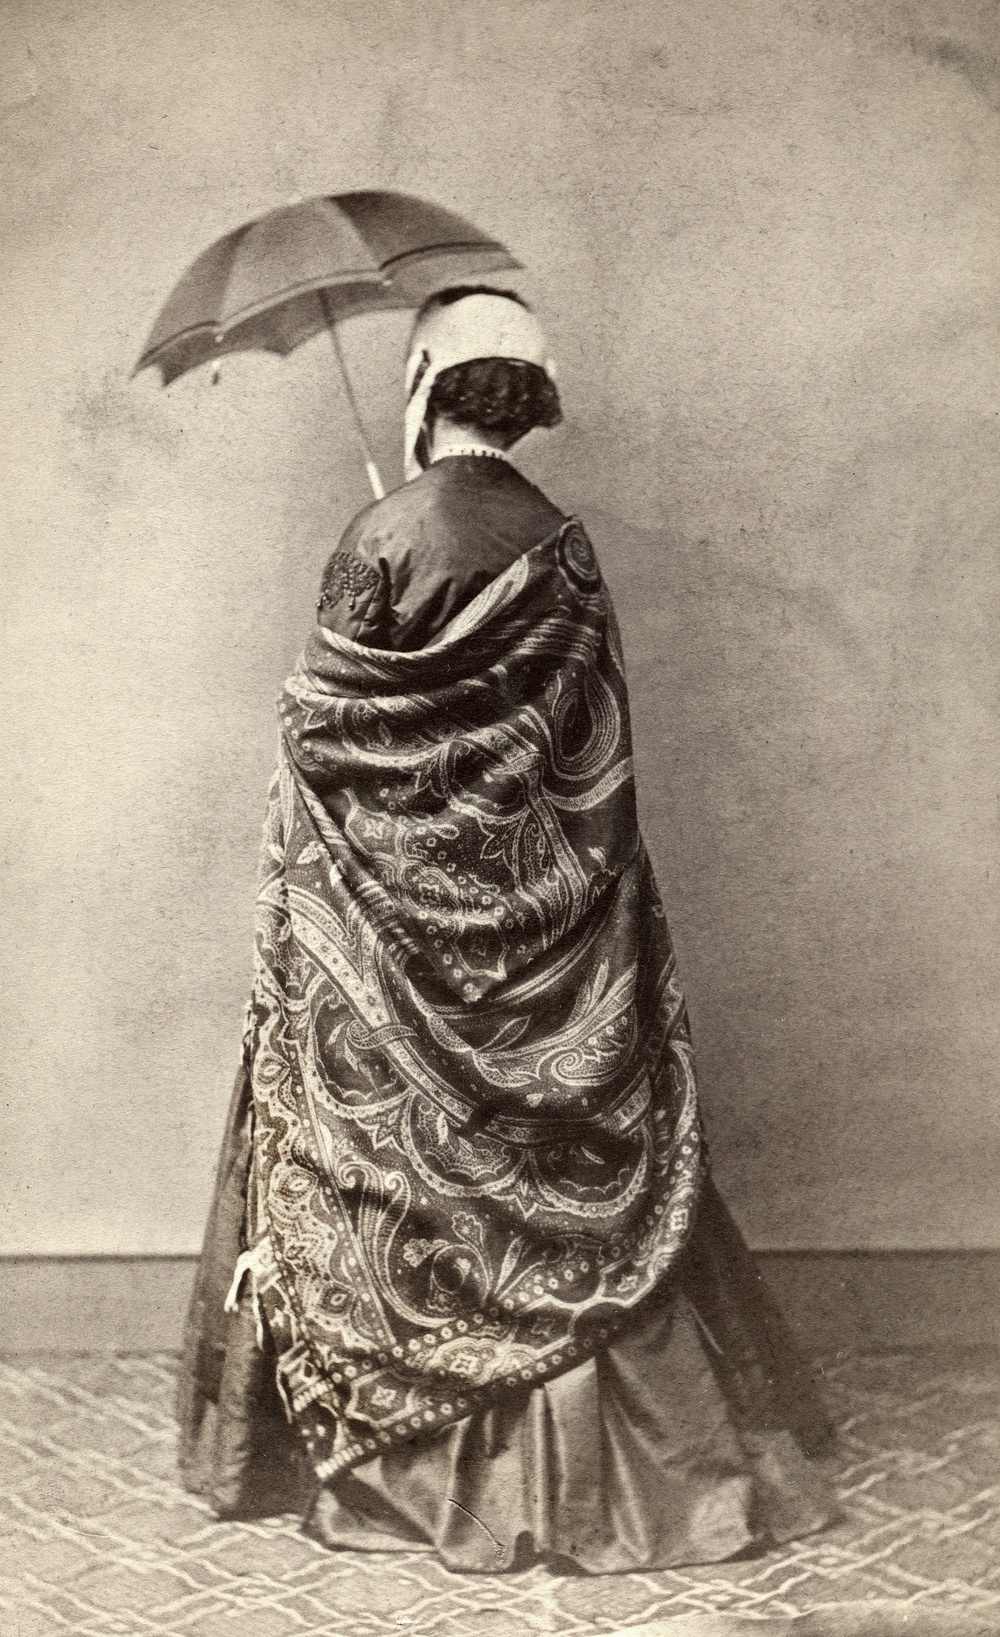 Fotografi från 1860-talet med en kvinna i stor, mönstrad schal, mörk sidenklänning, ljus hätta med svart spets och parasoll. Enligt texten på baksidan vägrade hon att visa sitt ansikte: ”alla böner och öfvertalningsförsök otillräckliga”.                                                                                                                 Fotograf Hilda Thysenius, Ronneby, 1860-talet. Gåva av Annie Olins sterbhus 1961. 
Albuminsilverfotografi monterat på kartong. Visitkort.
